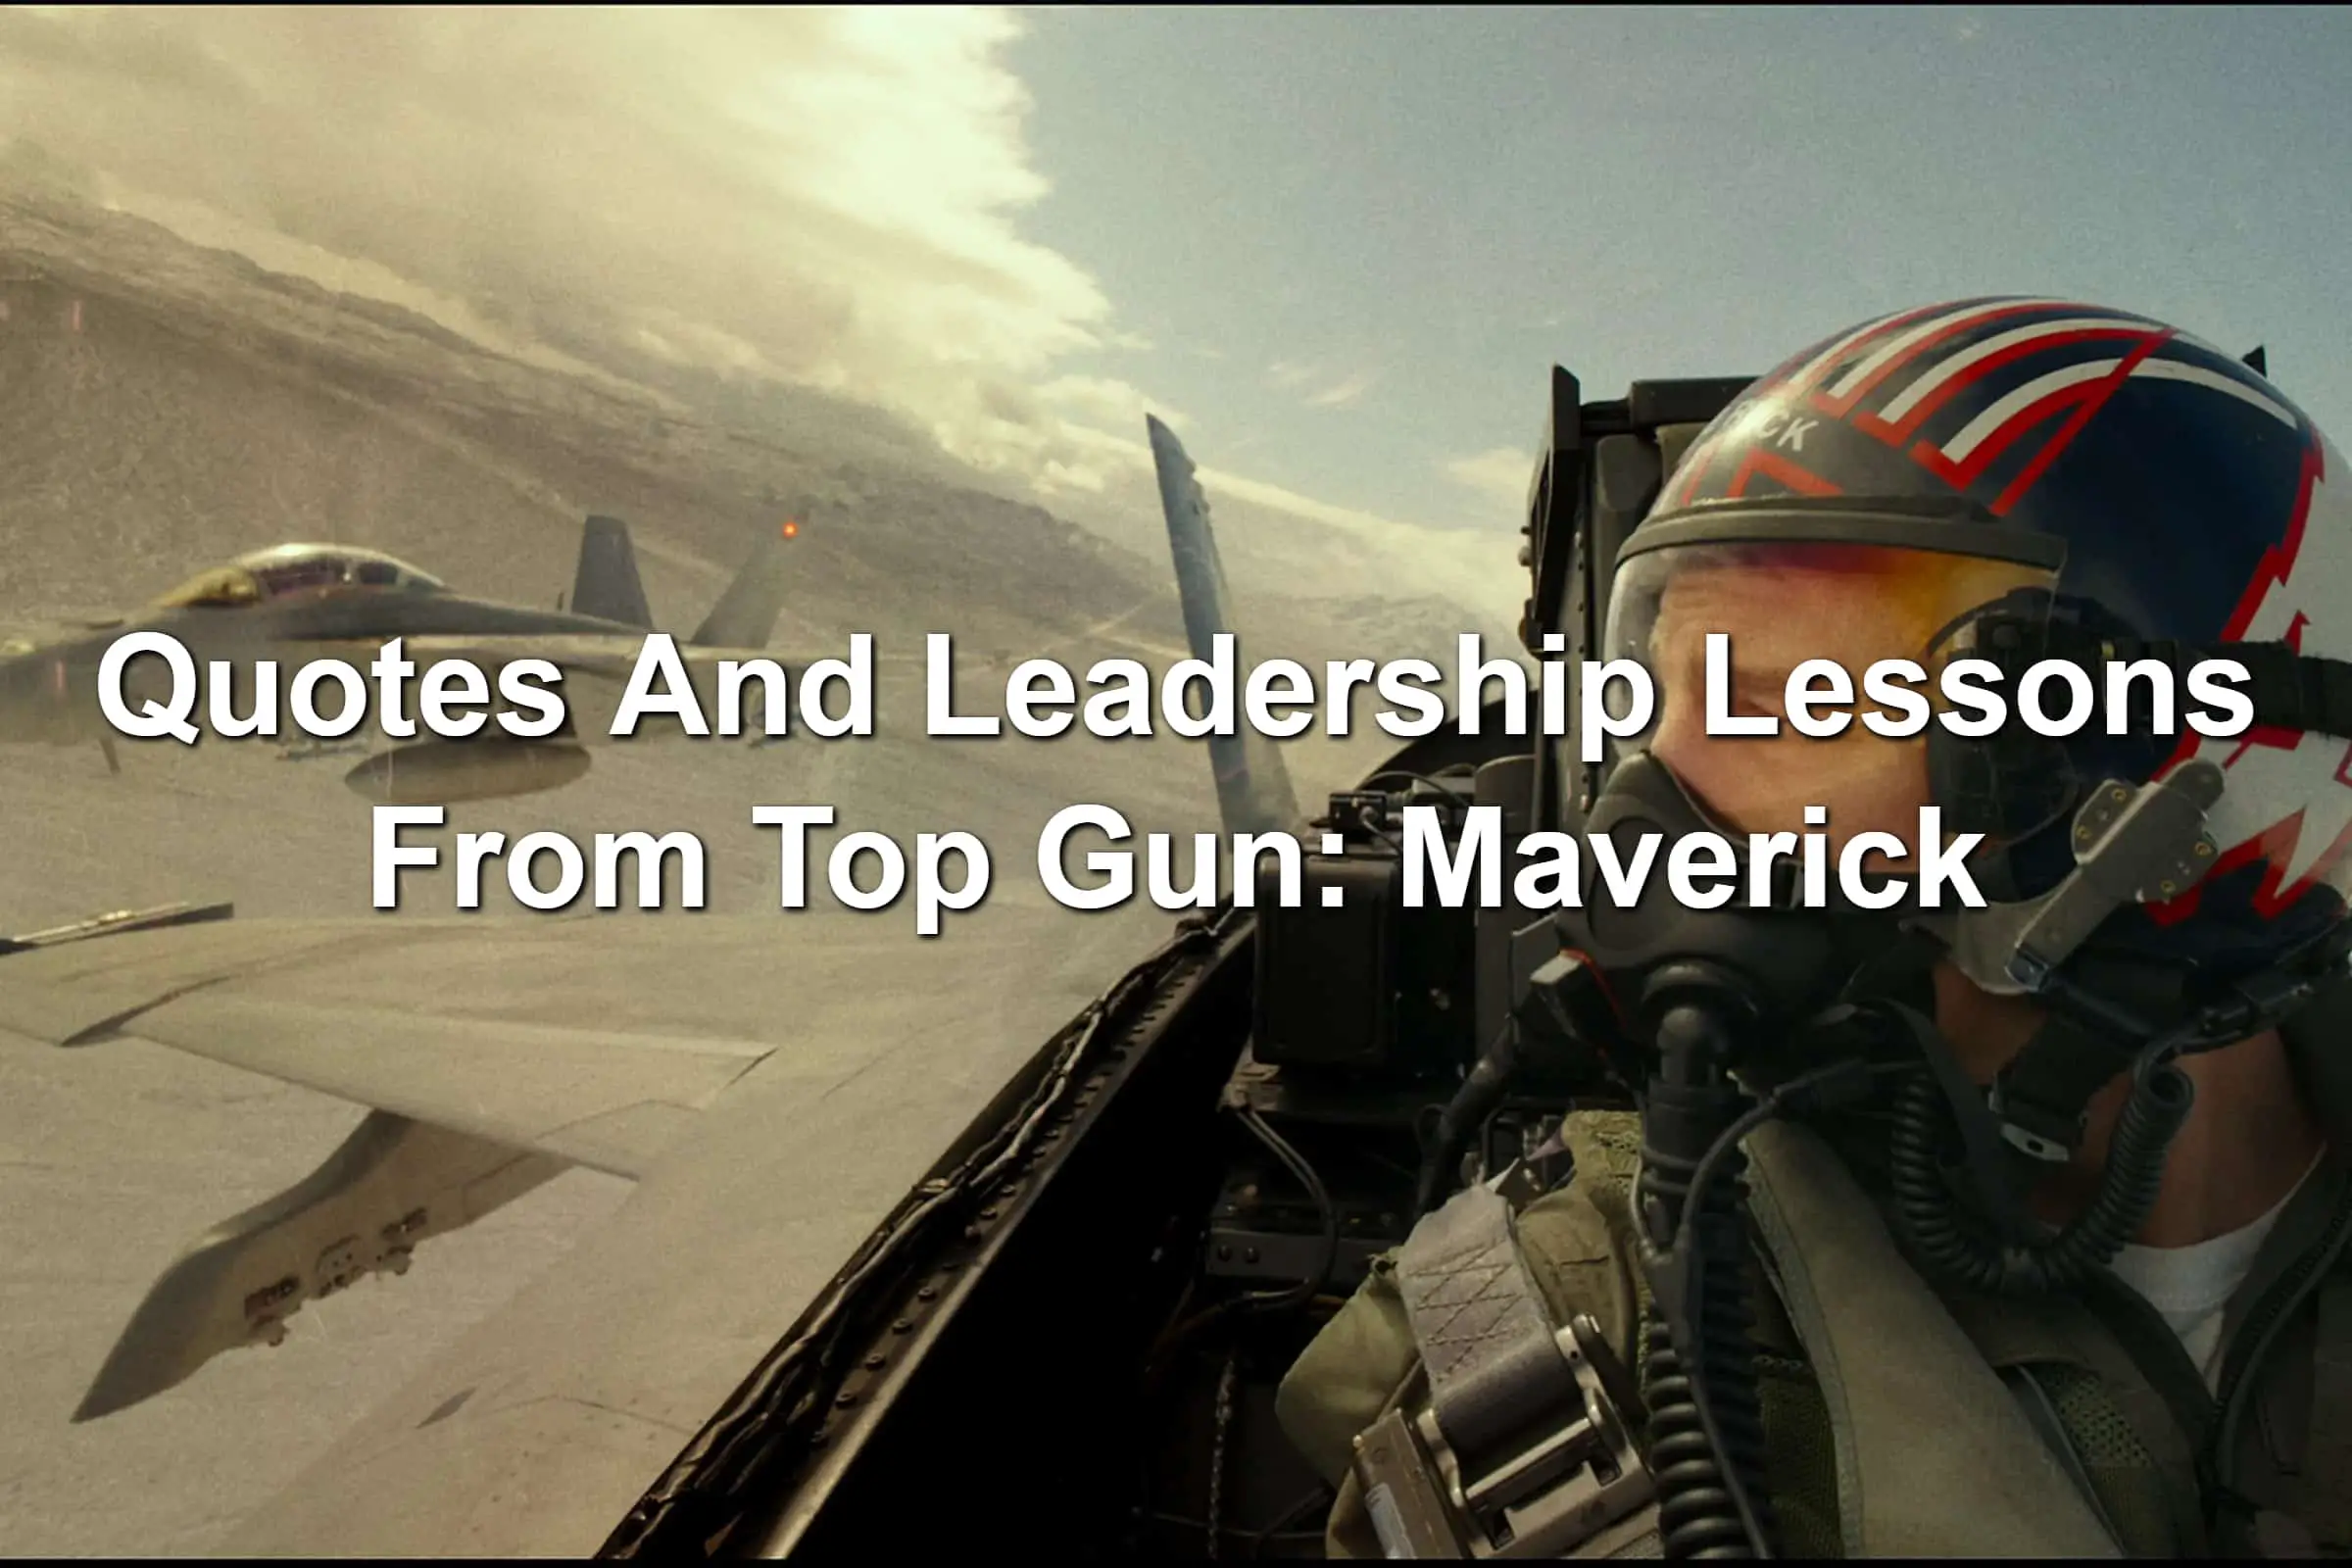 Tom Cruise in a fighter jet in Top Gun: Maverick